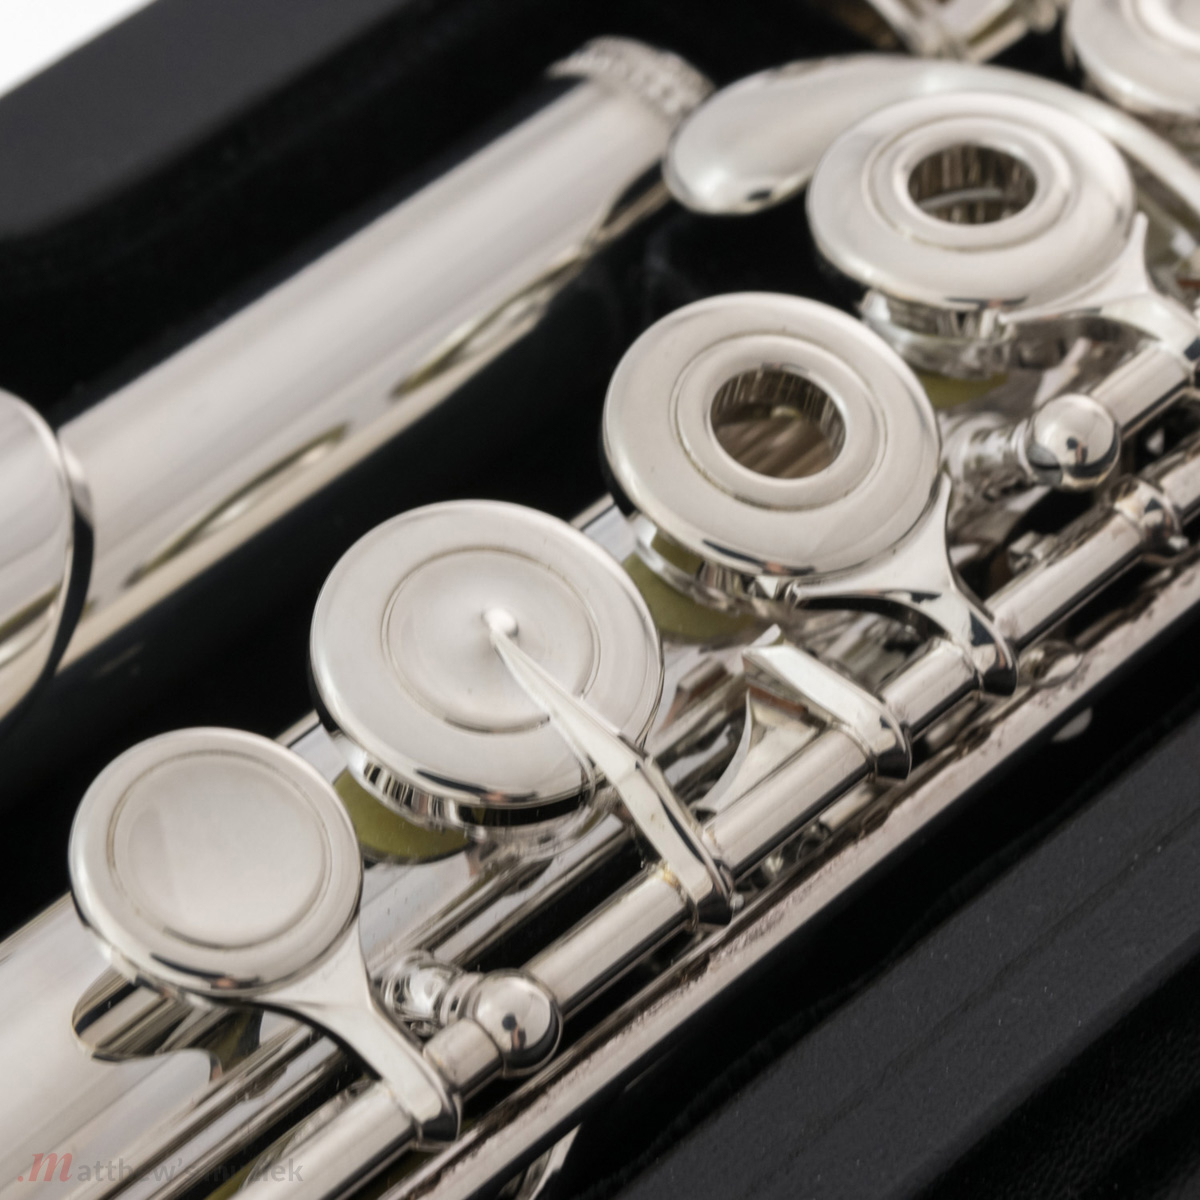 Sankyo Flute - 301 BE Silversonic